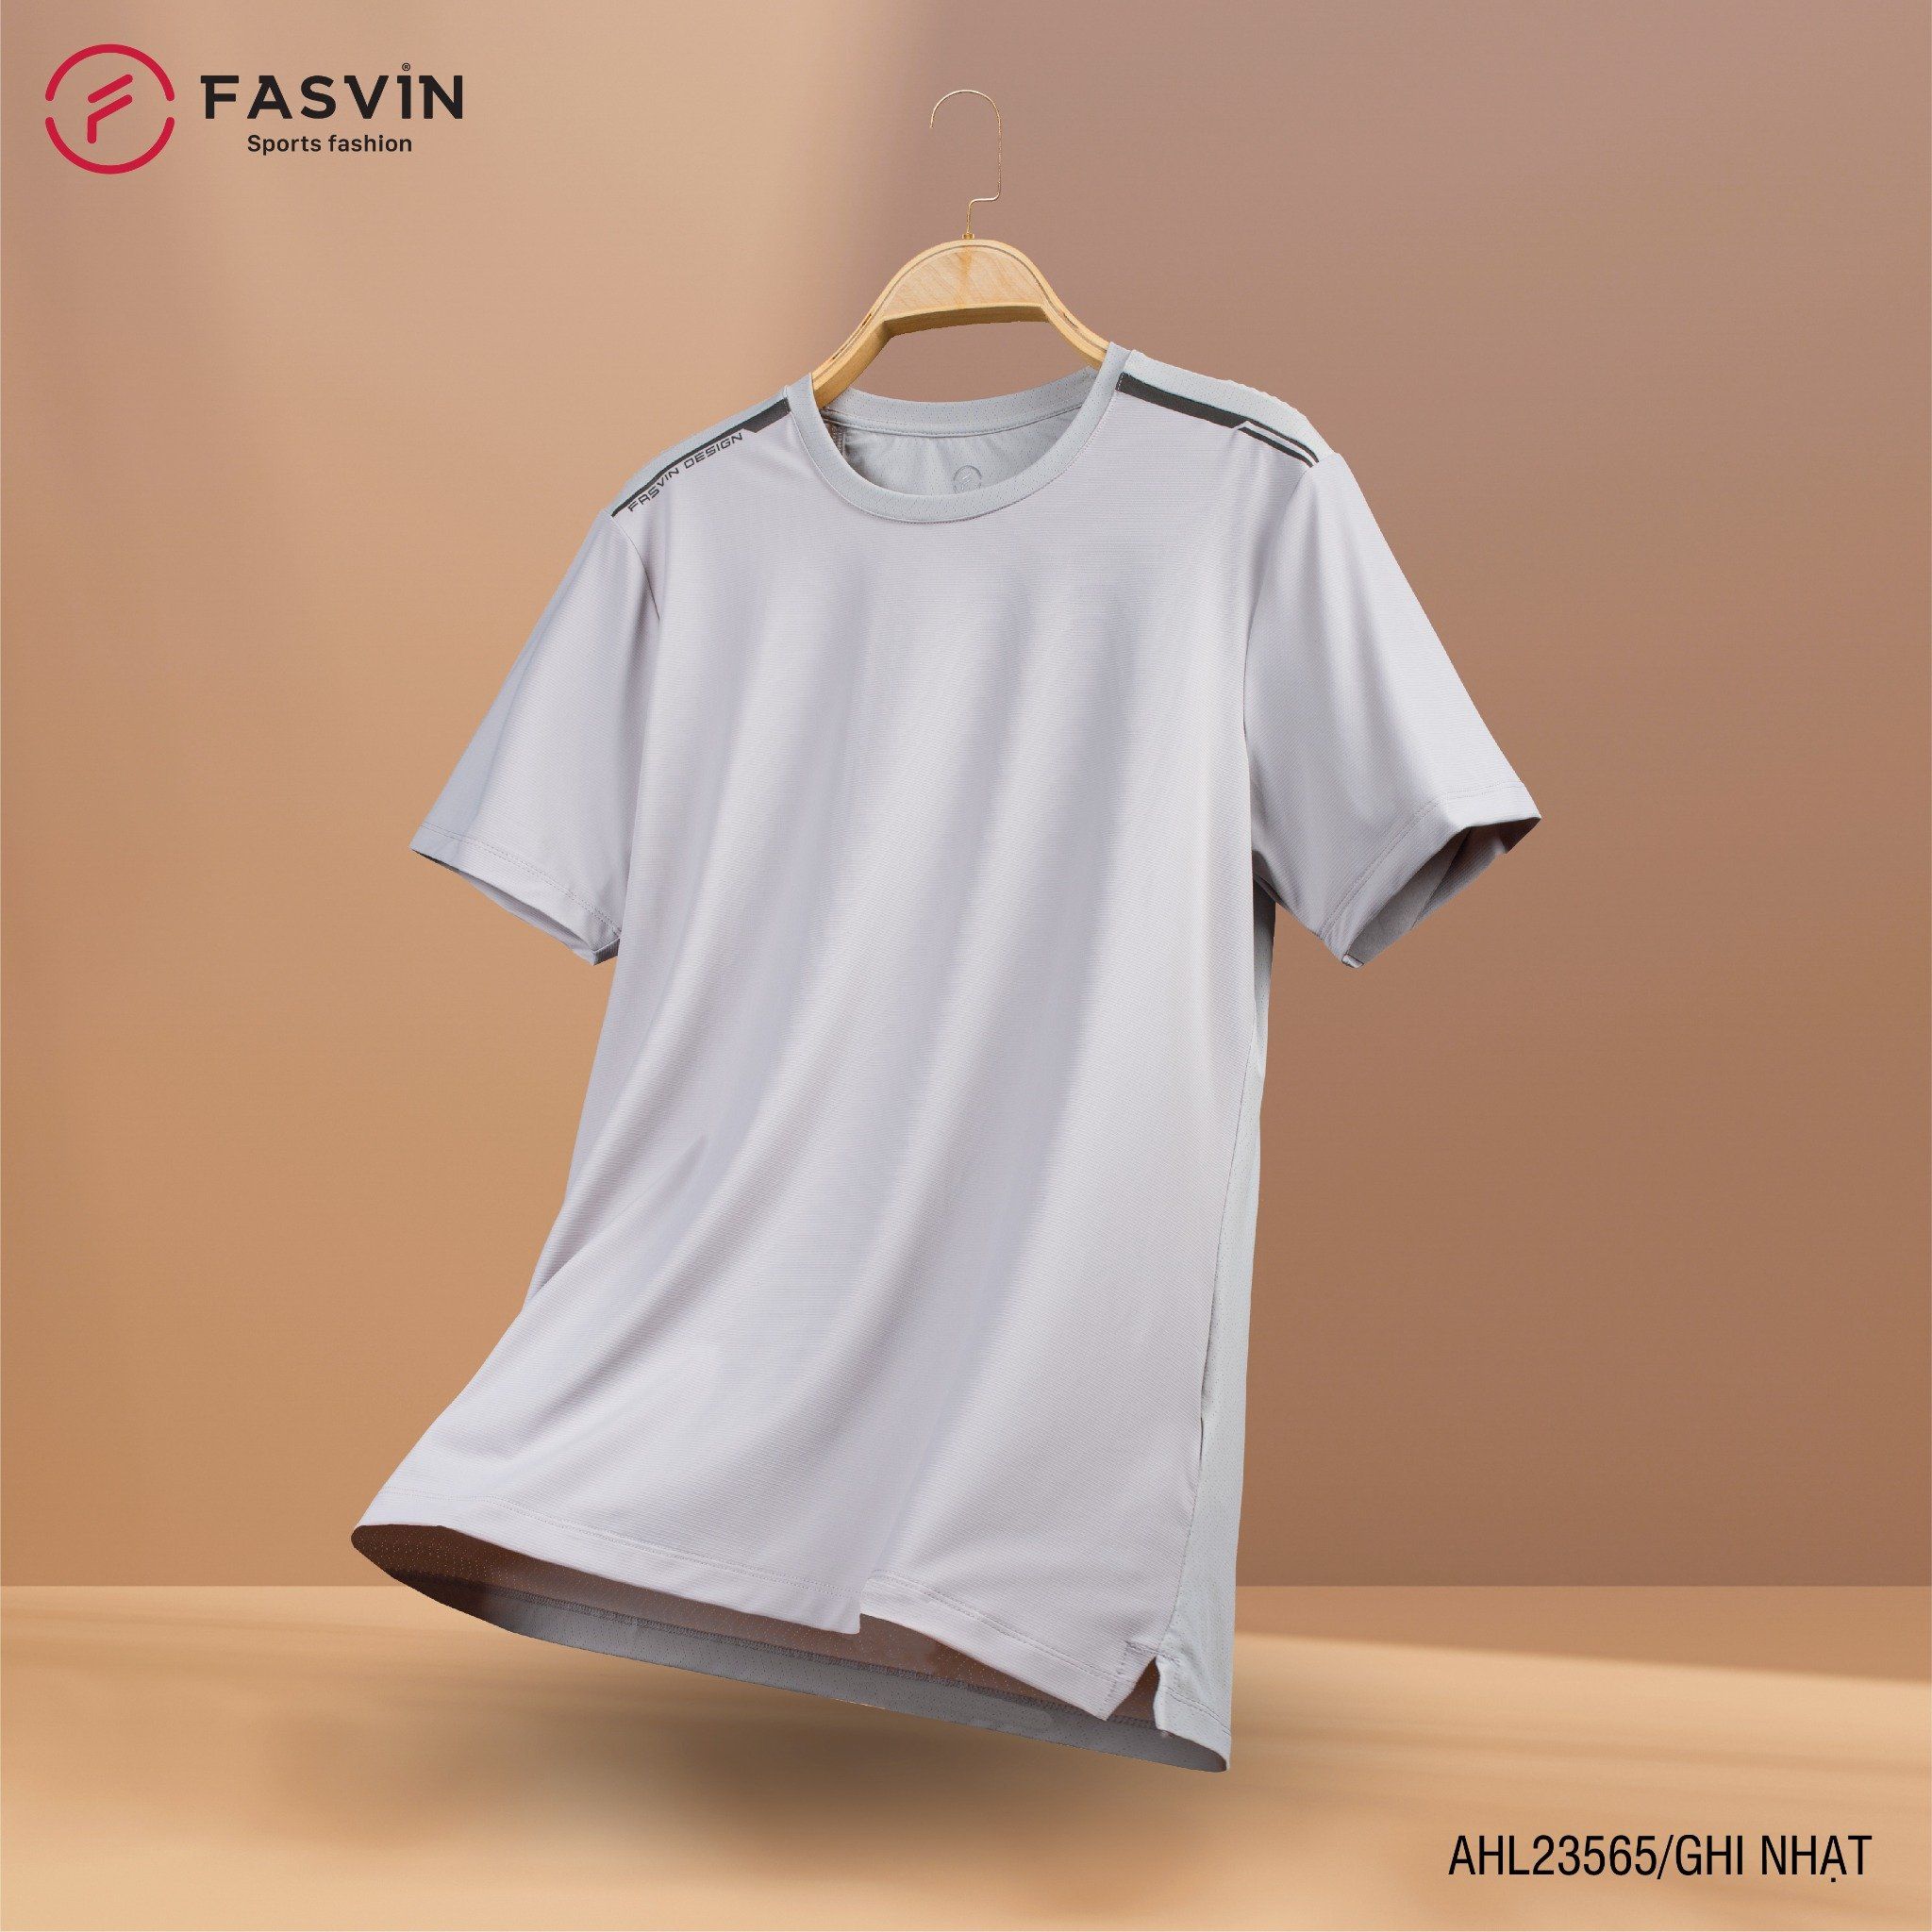  Áo thun thể thao nam Fasvin AHL23565 chất Nylon cao cấp vải mềm mịn thoáng mát thoải mái 